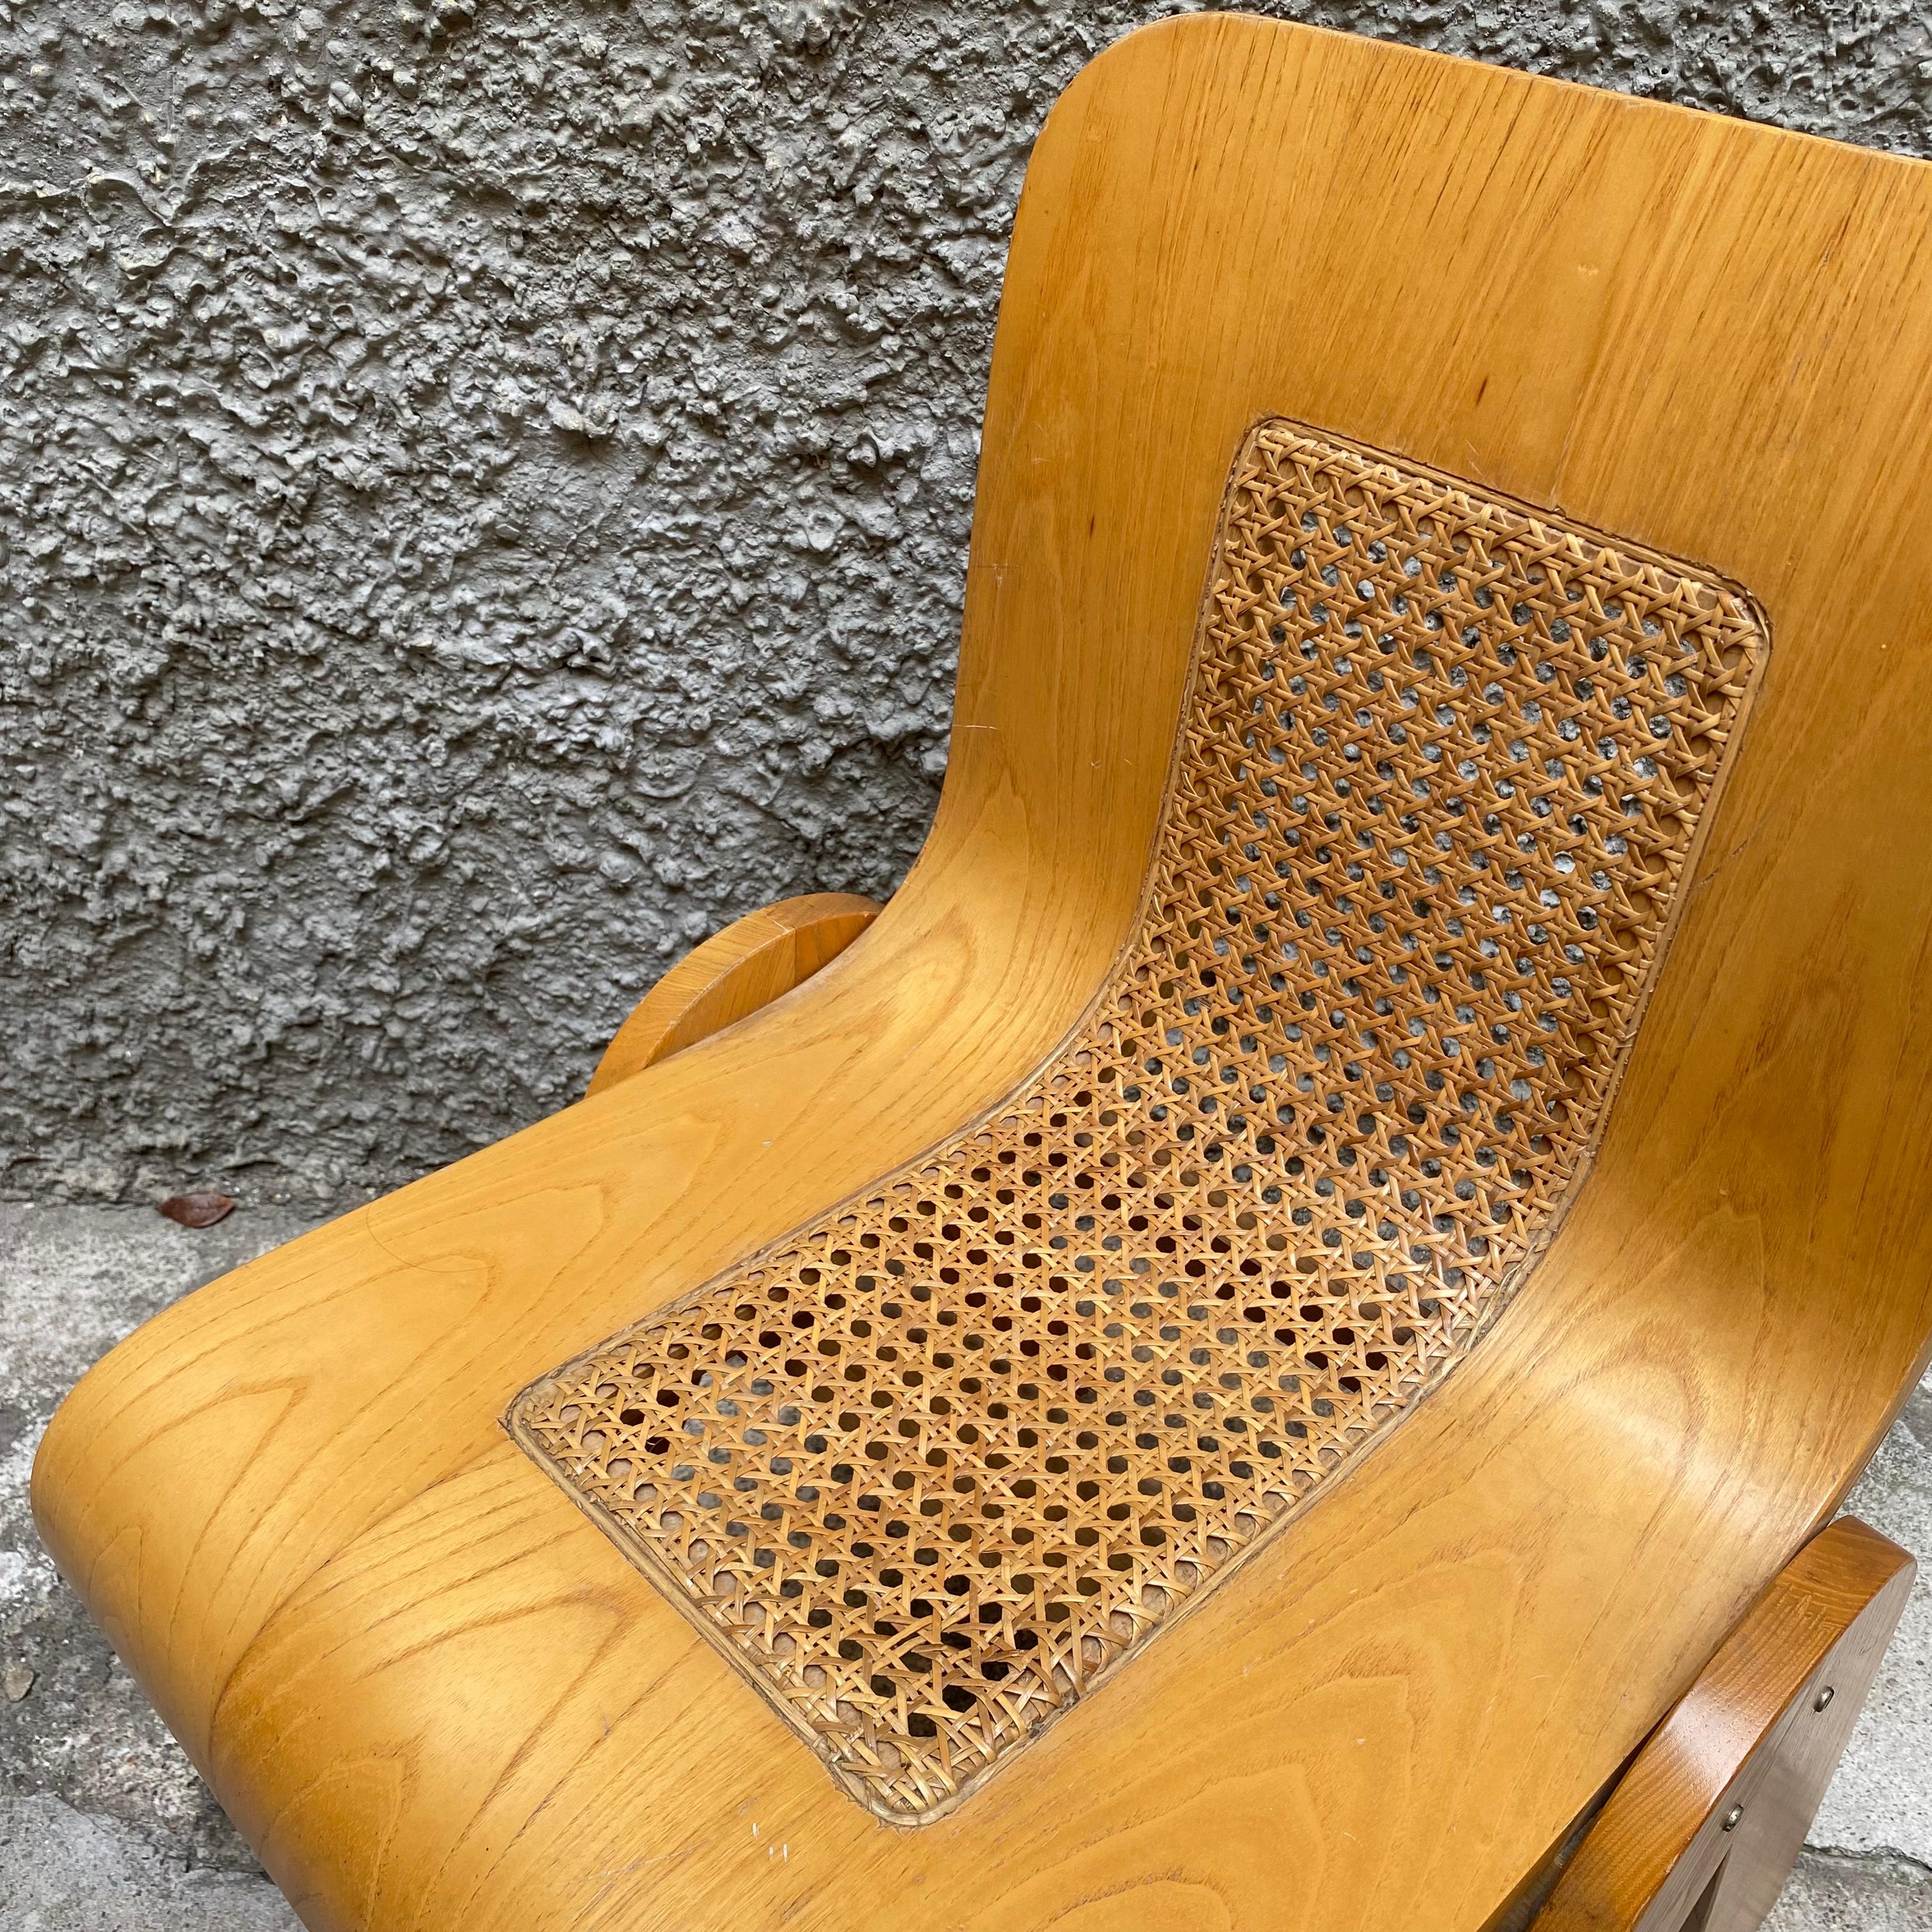 Dieser Stuhl ist ein origineller Entwurf des Italieners Gigi Sabadin. Er besteht aus gebogenem Sperrholz und ist furniert. Das organische Design scheint aus einem Stück gefertigt zu sein, das geschnitten und gebogen wird. Die Rückenlehne ist offen